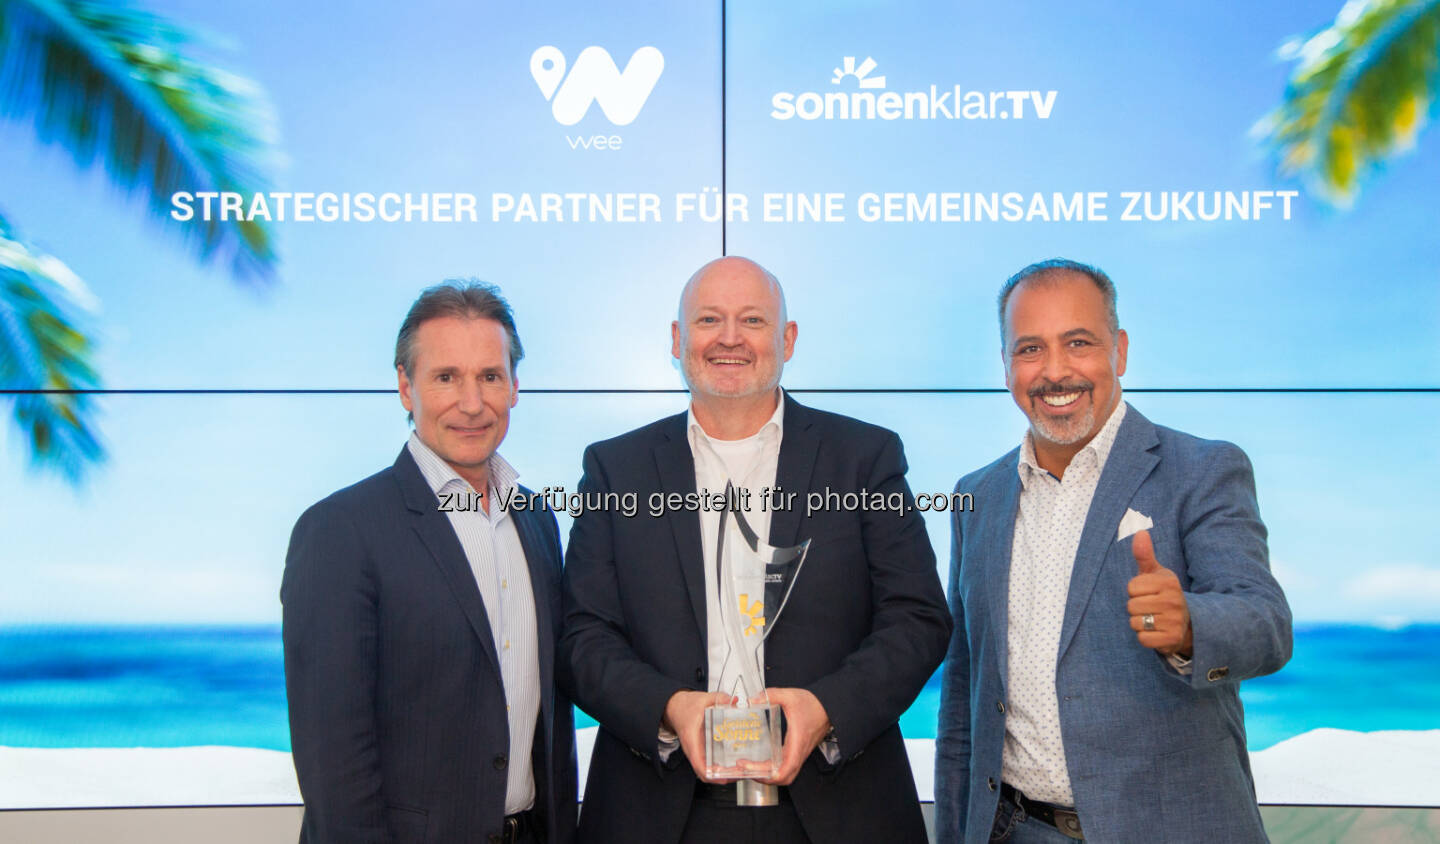 weeCONOMY AG: Cengiz Ehliz will in 5 Jahren 10 Mio. Fans als neue wee-Nutzer
gewinnen